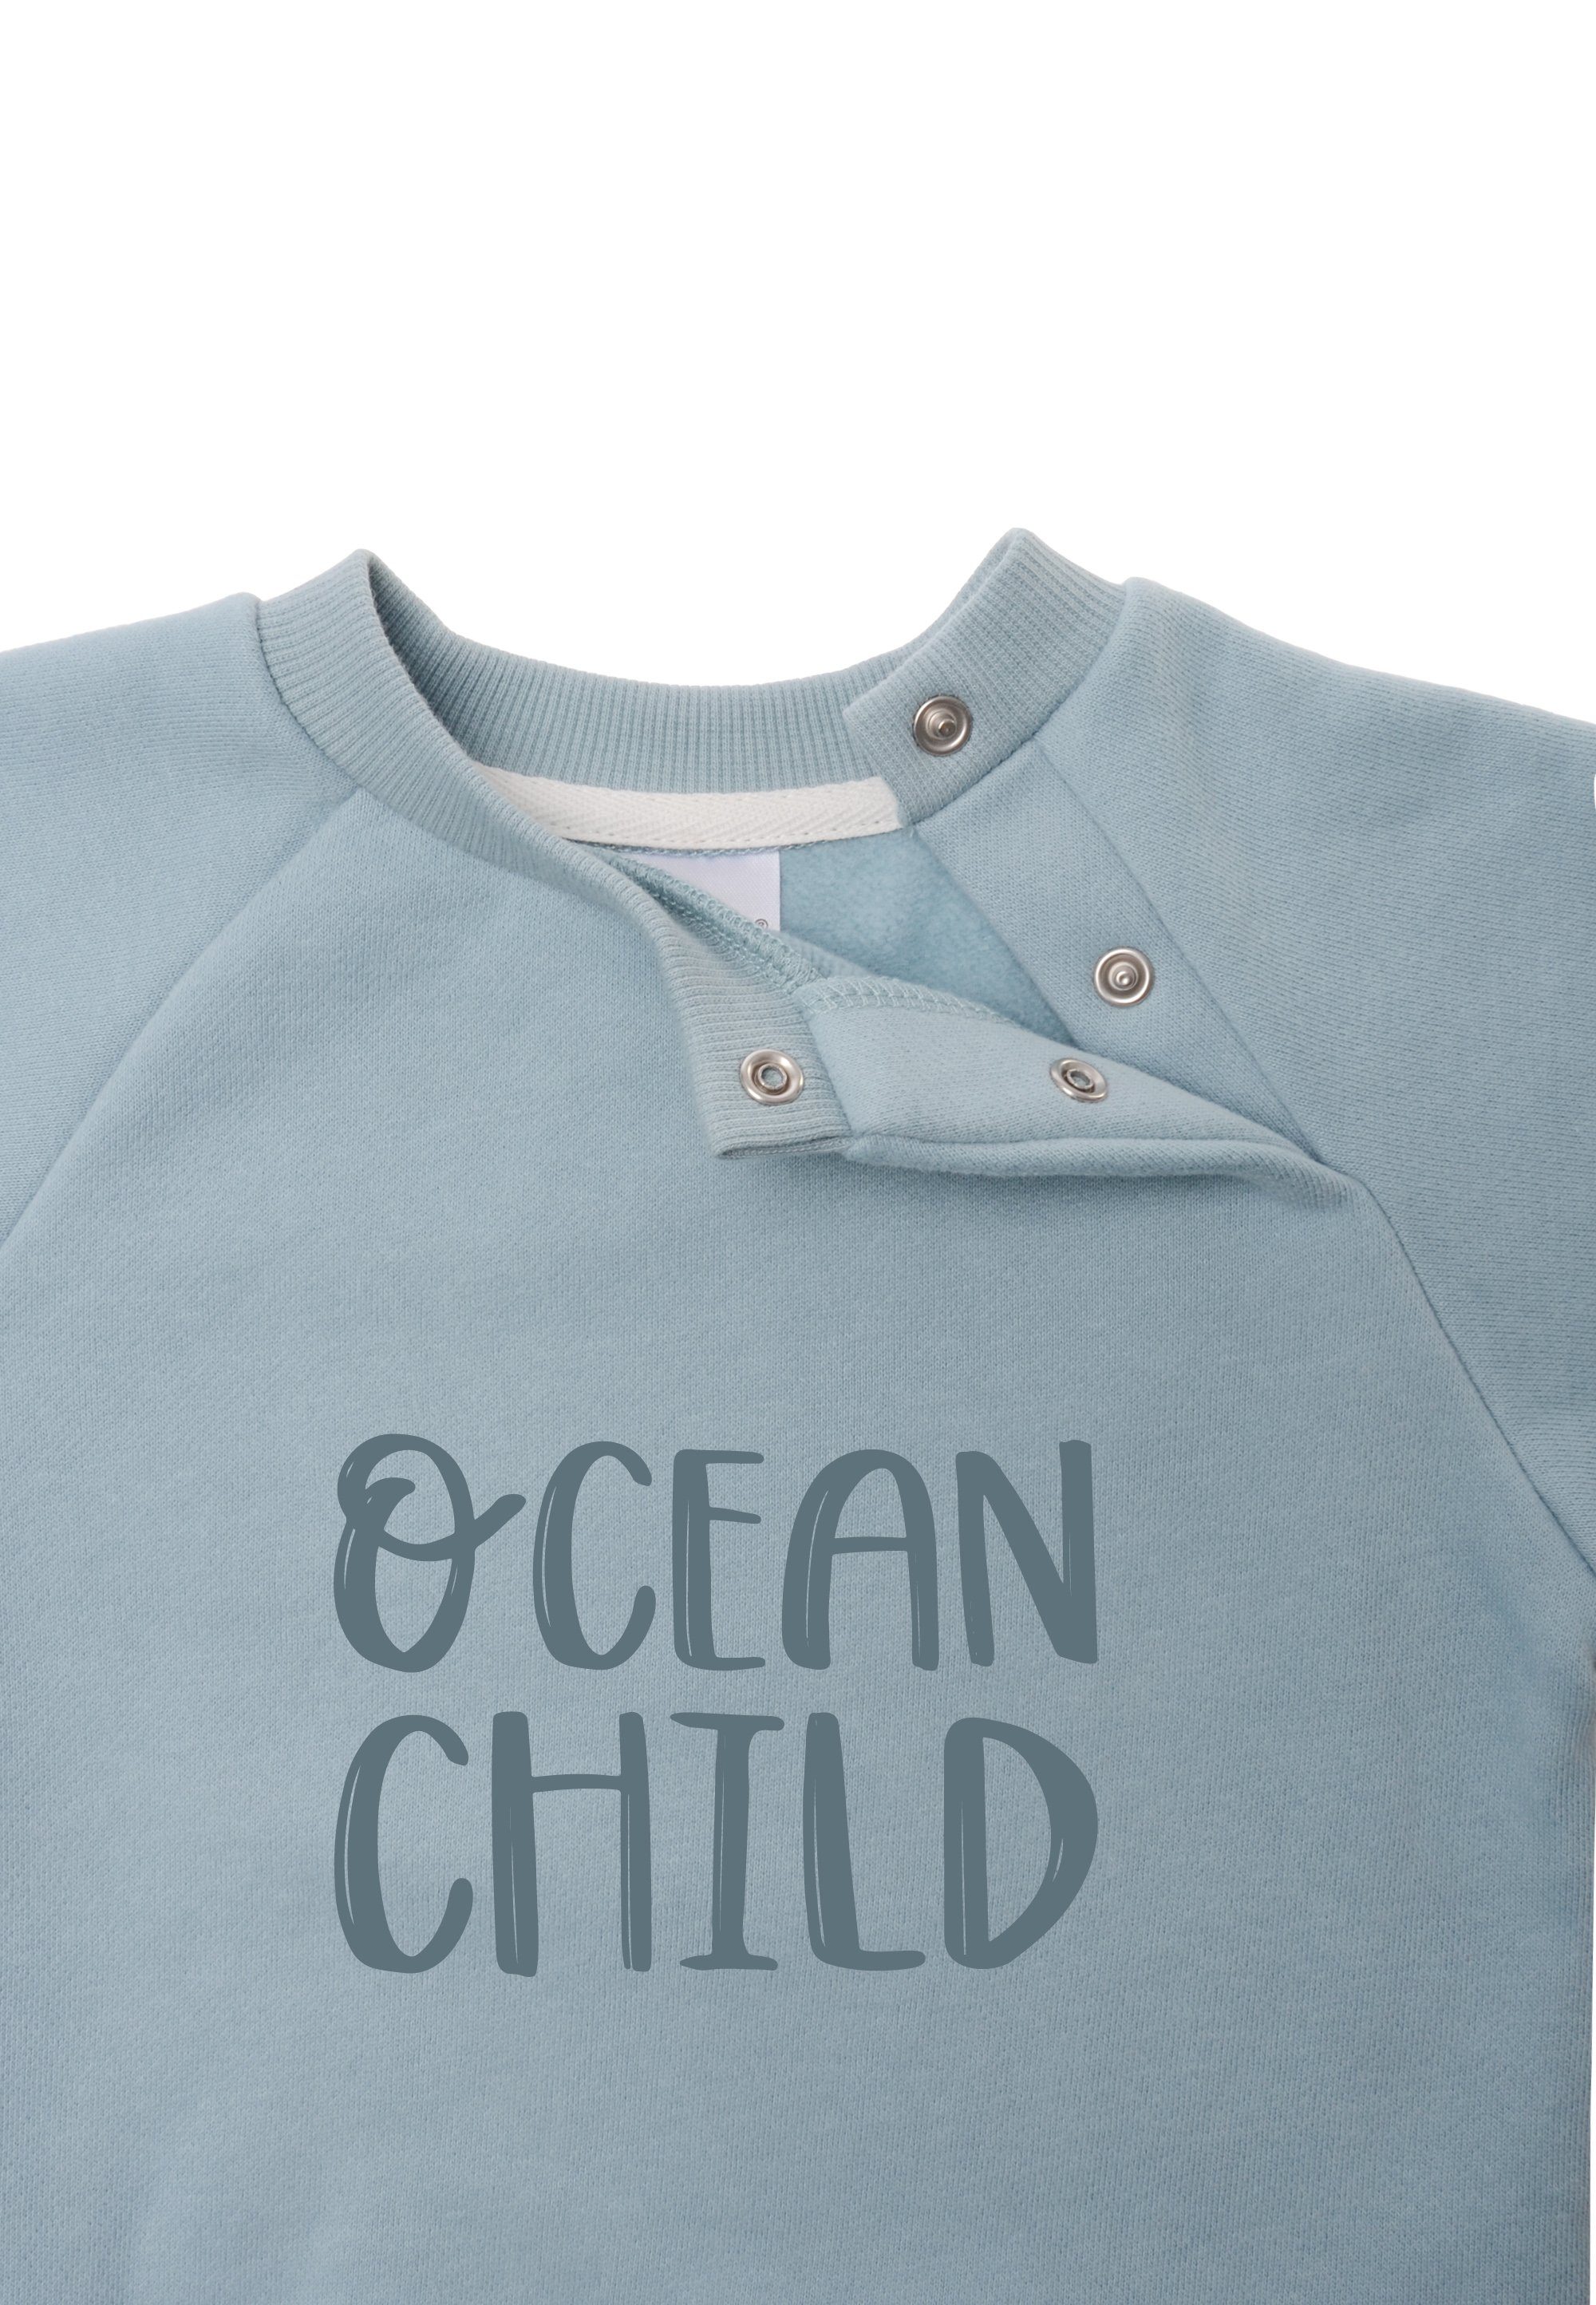 Sweatshirt child Liliput Ocean weichem Baumwoll-Material aus